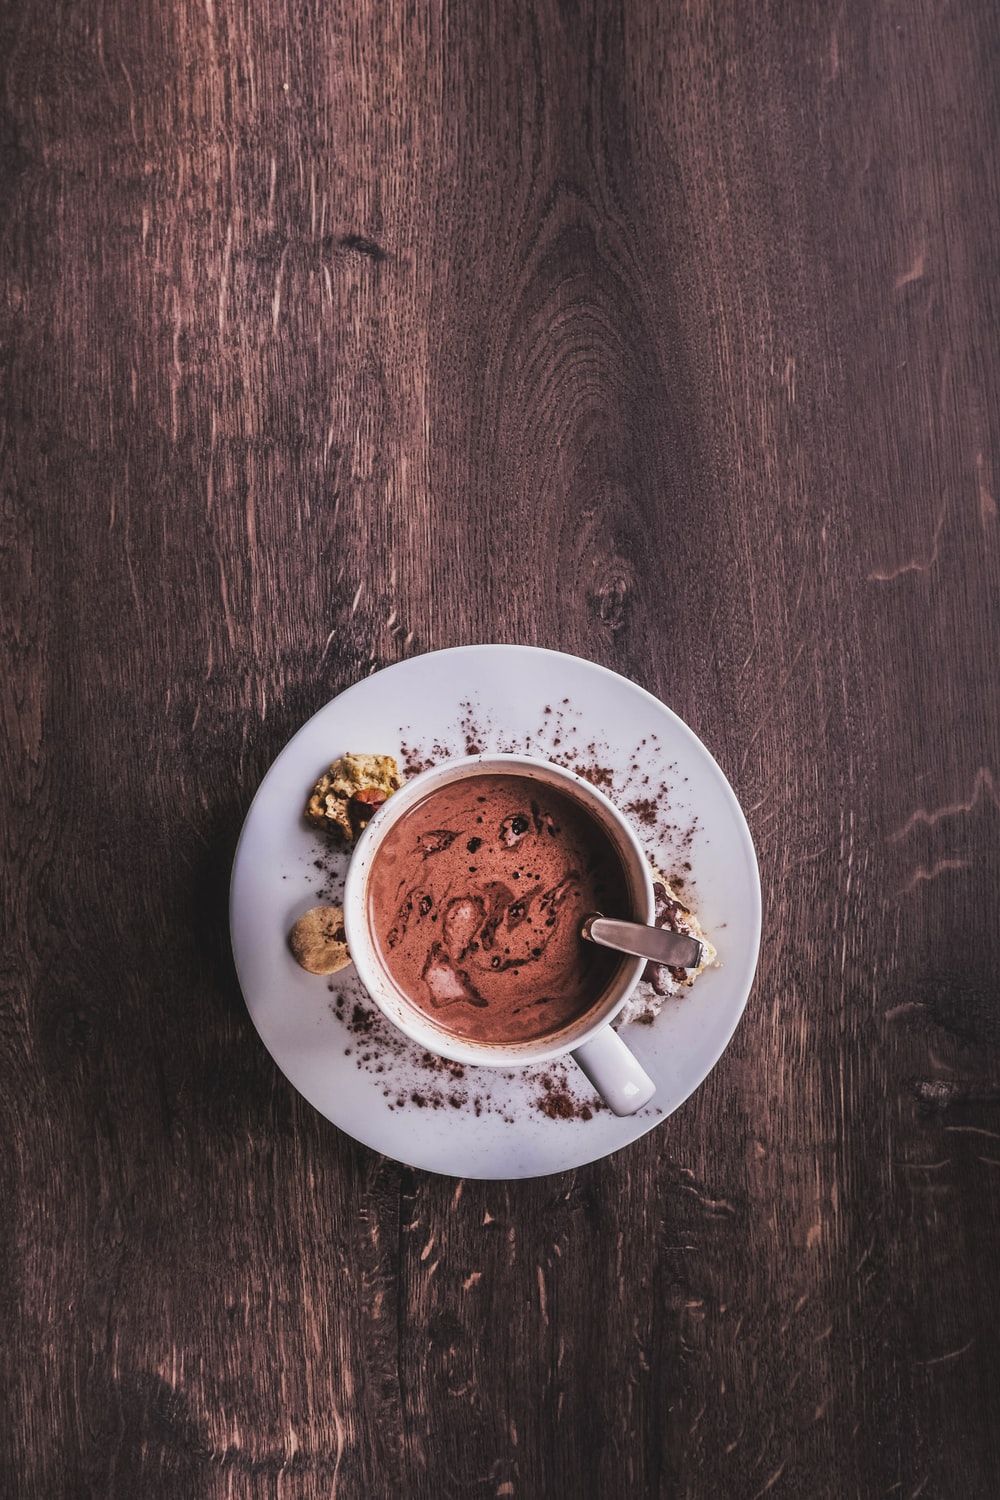 Chocolate coffee photo